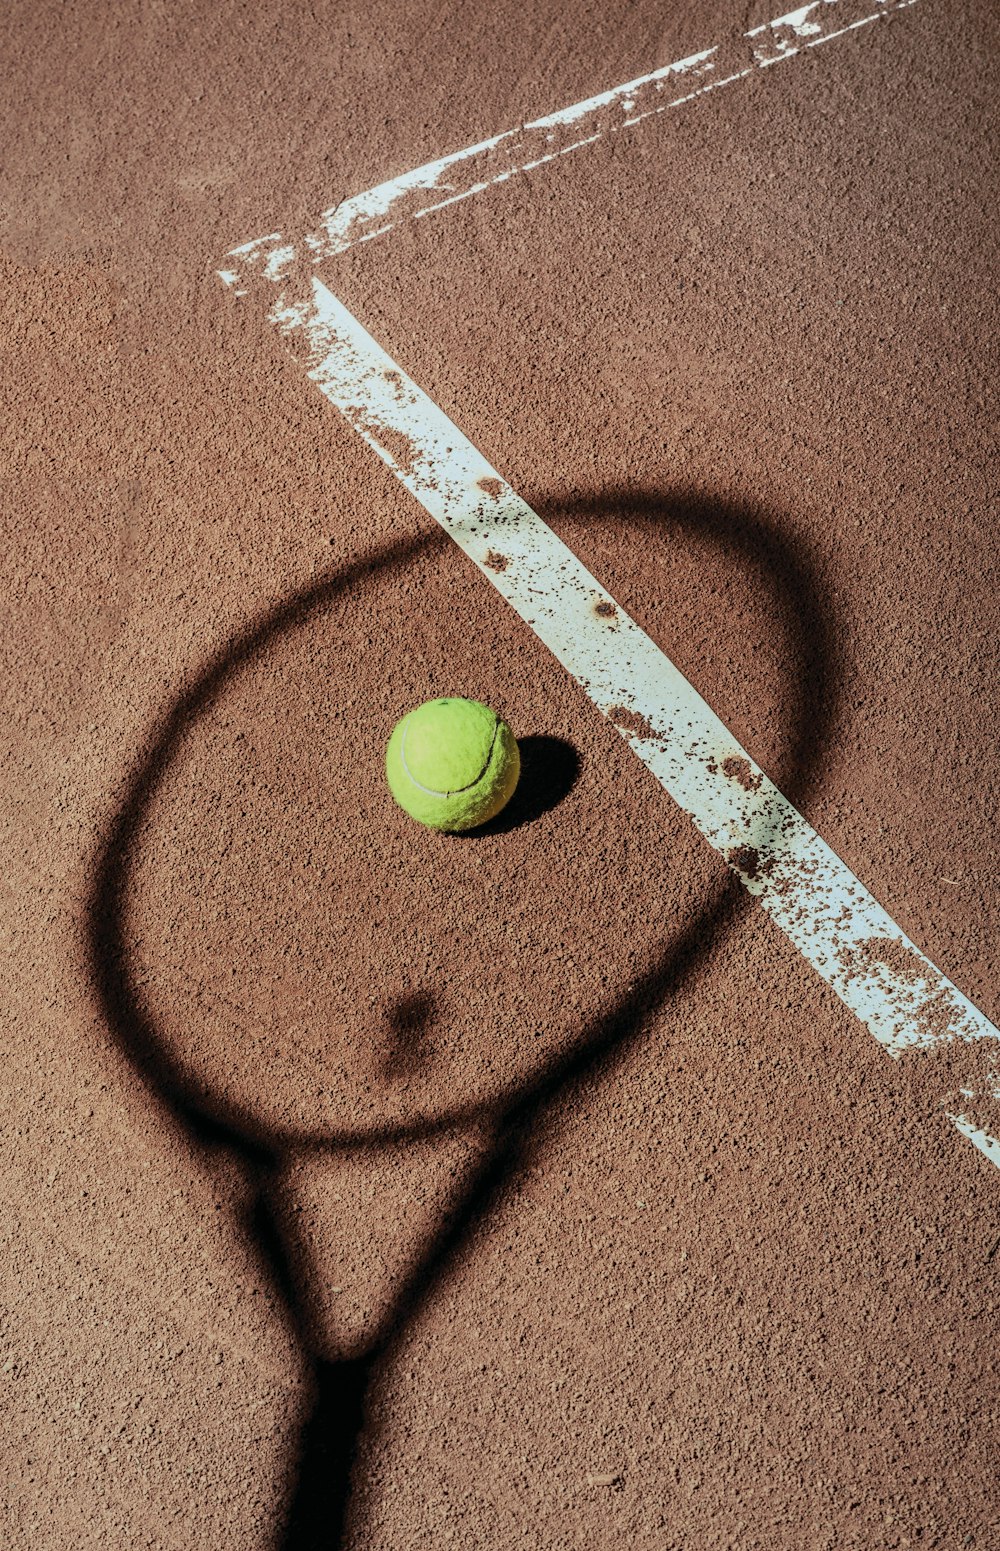 green tennis ball